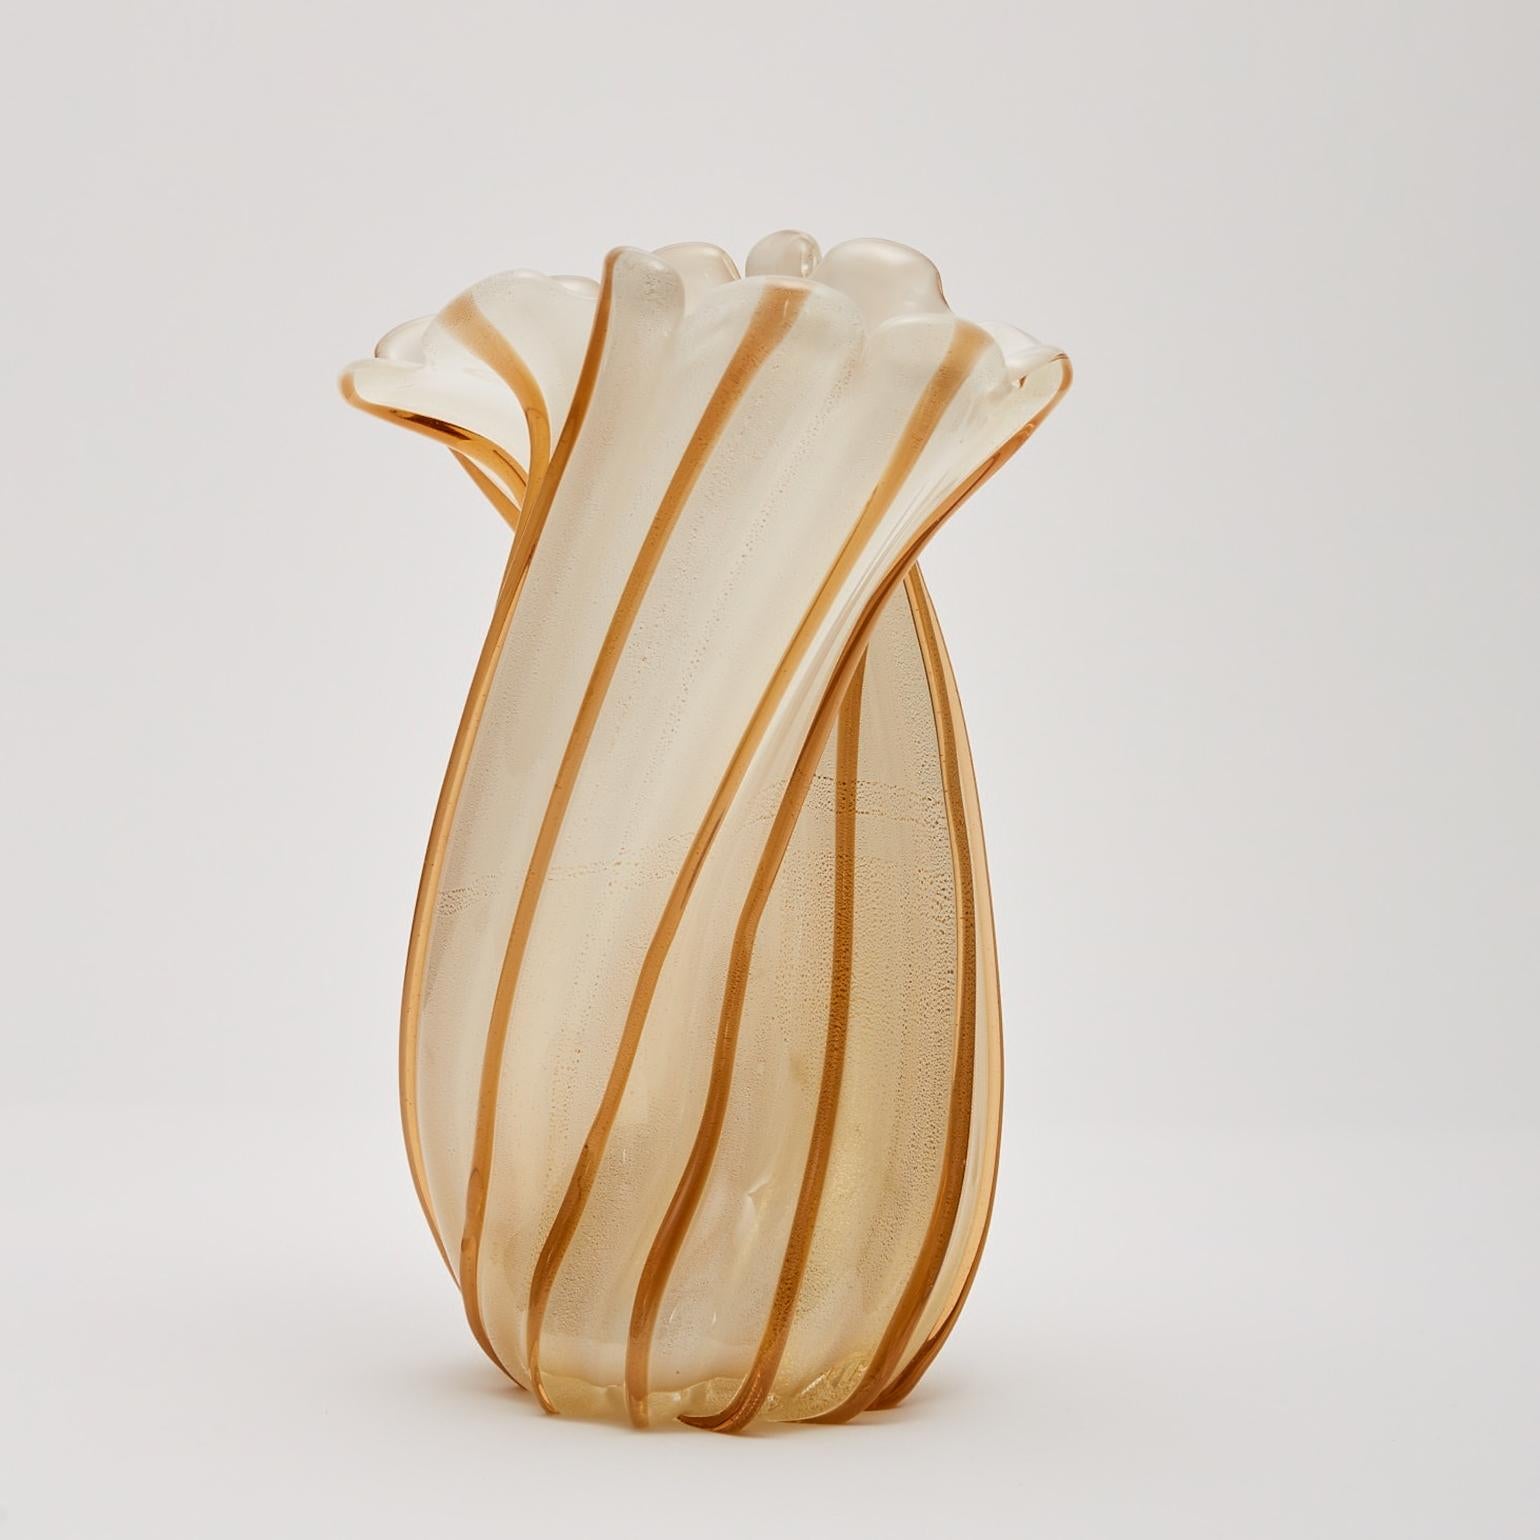 Grand vase CIRCA en verre soufflé avec feuilles d'or vers 1955 par Archimede Seguso (1909-1999) pour Vetreria Archimede Seguso. Ritorto signifie jumelé en italien. Ce vase en verre soufflé à la bouche est composé de colonnes de verre torsadé